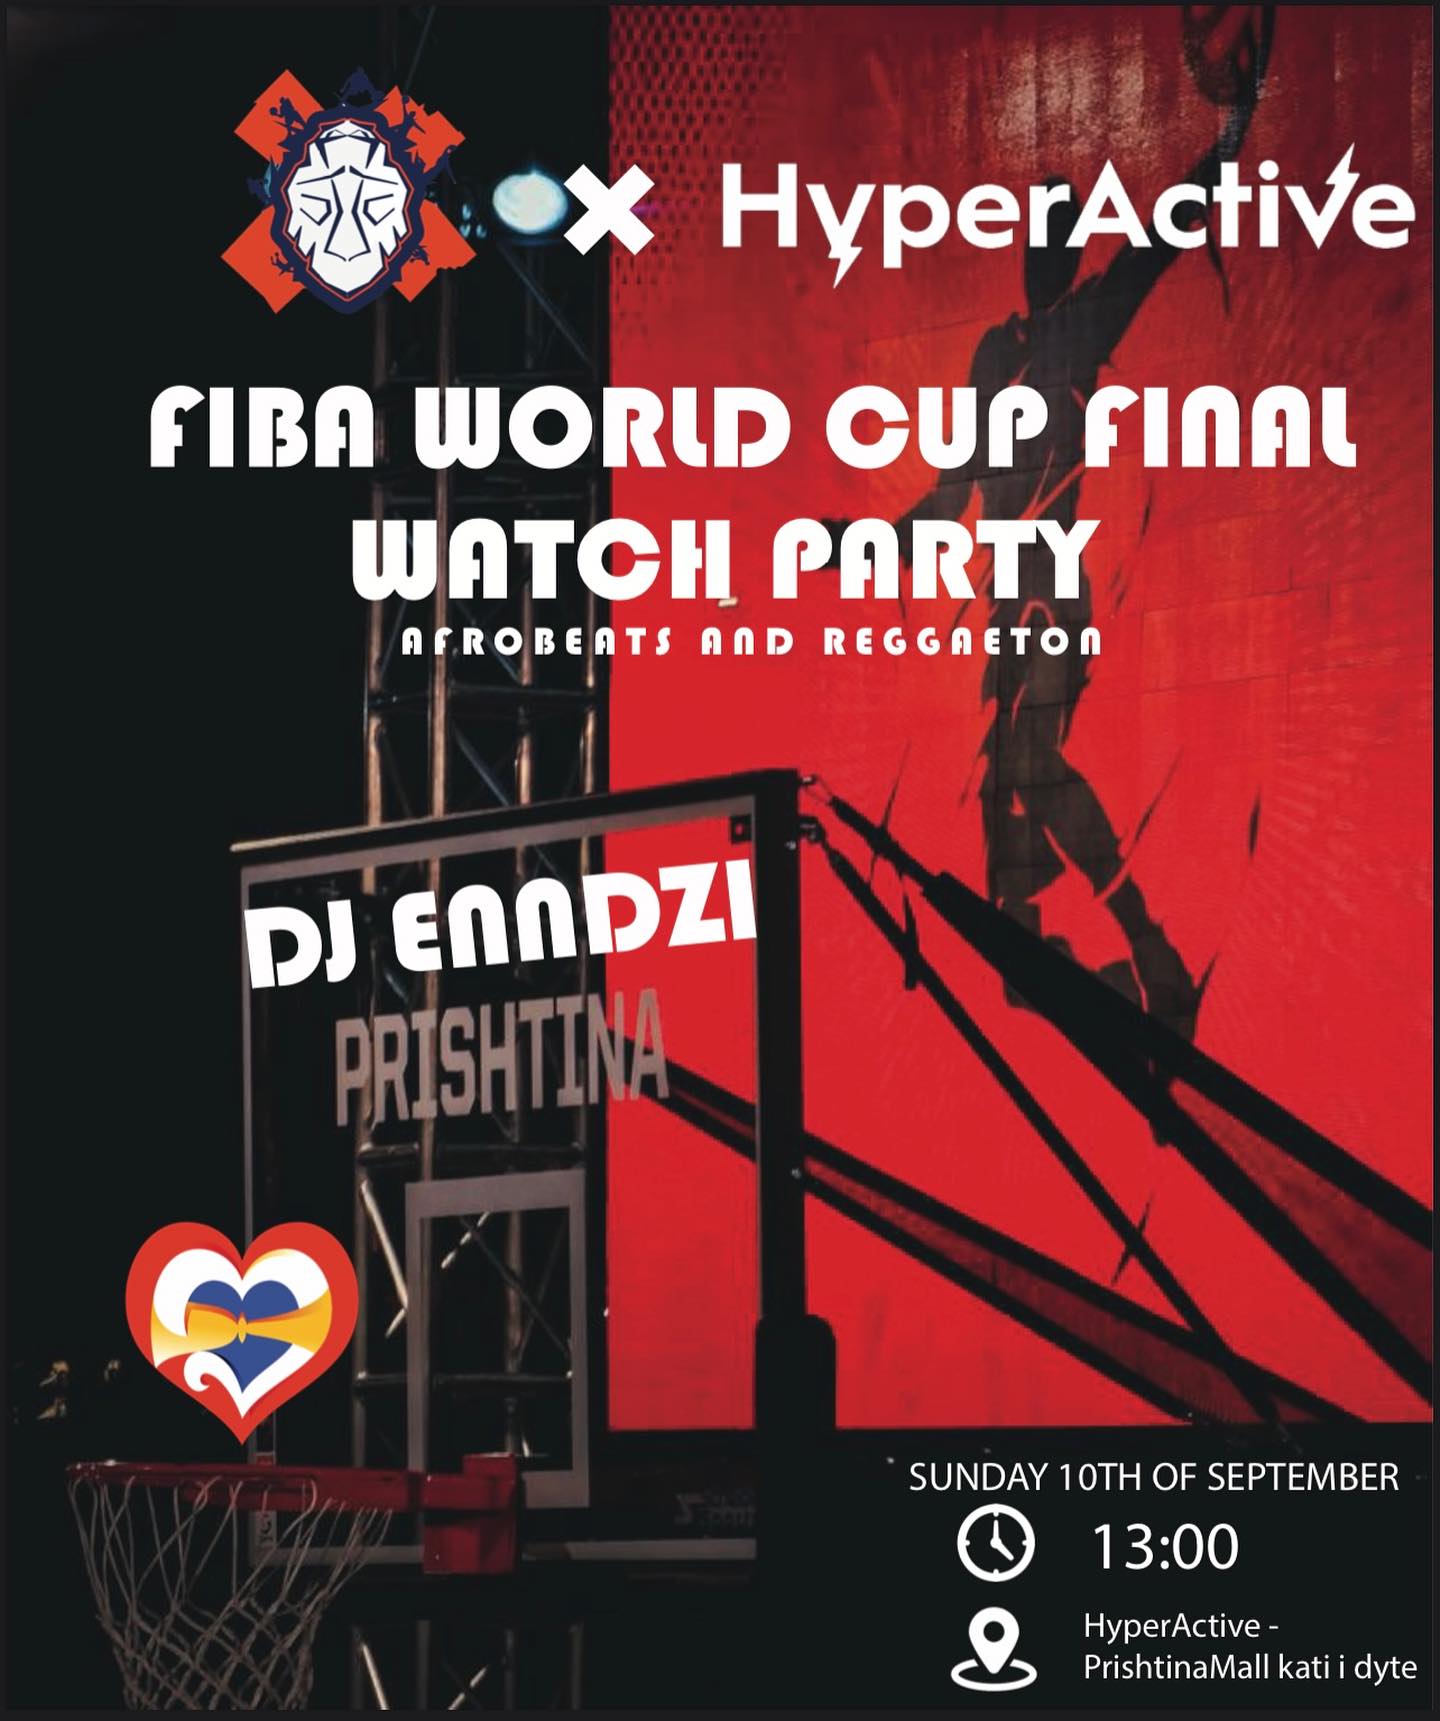 Në Prishtinë organizohet ‘watch party’ e Fiba World Cup me plot shpërblime për pjesëmarrësit